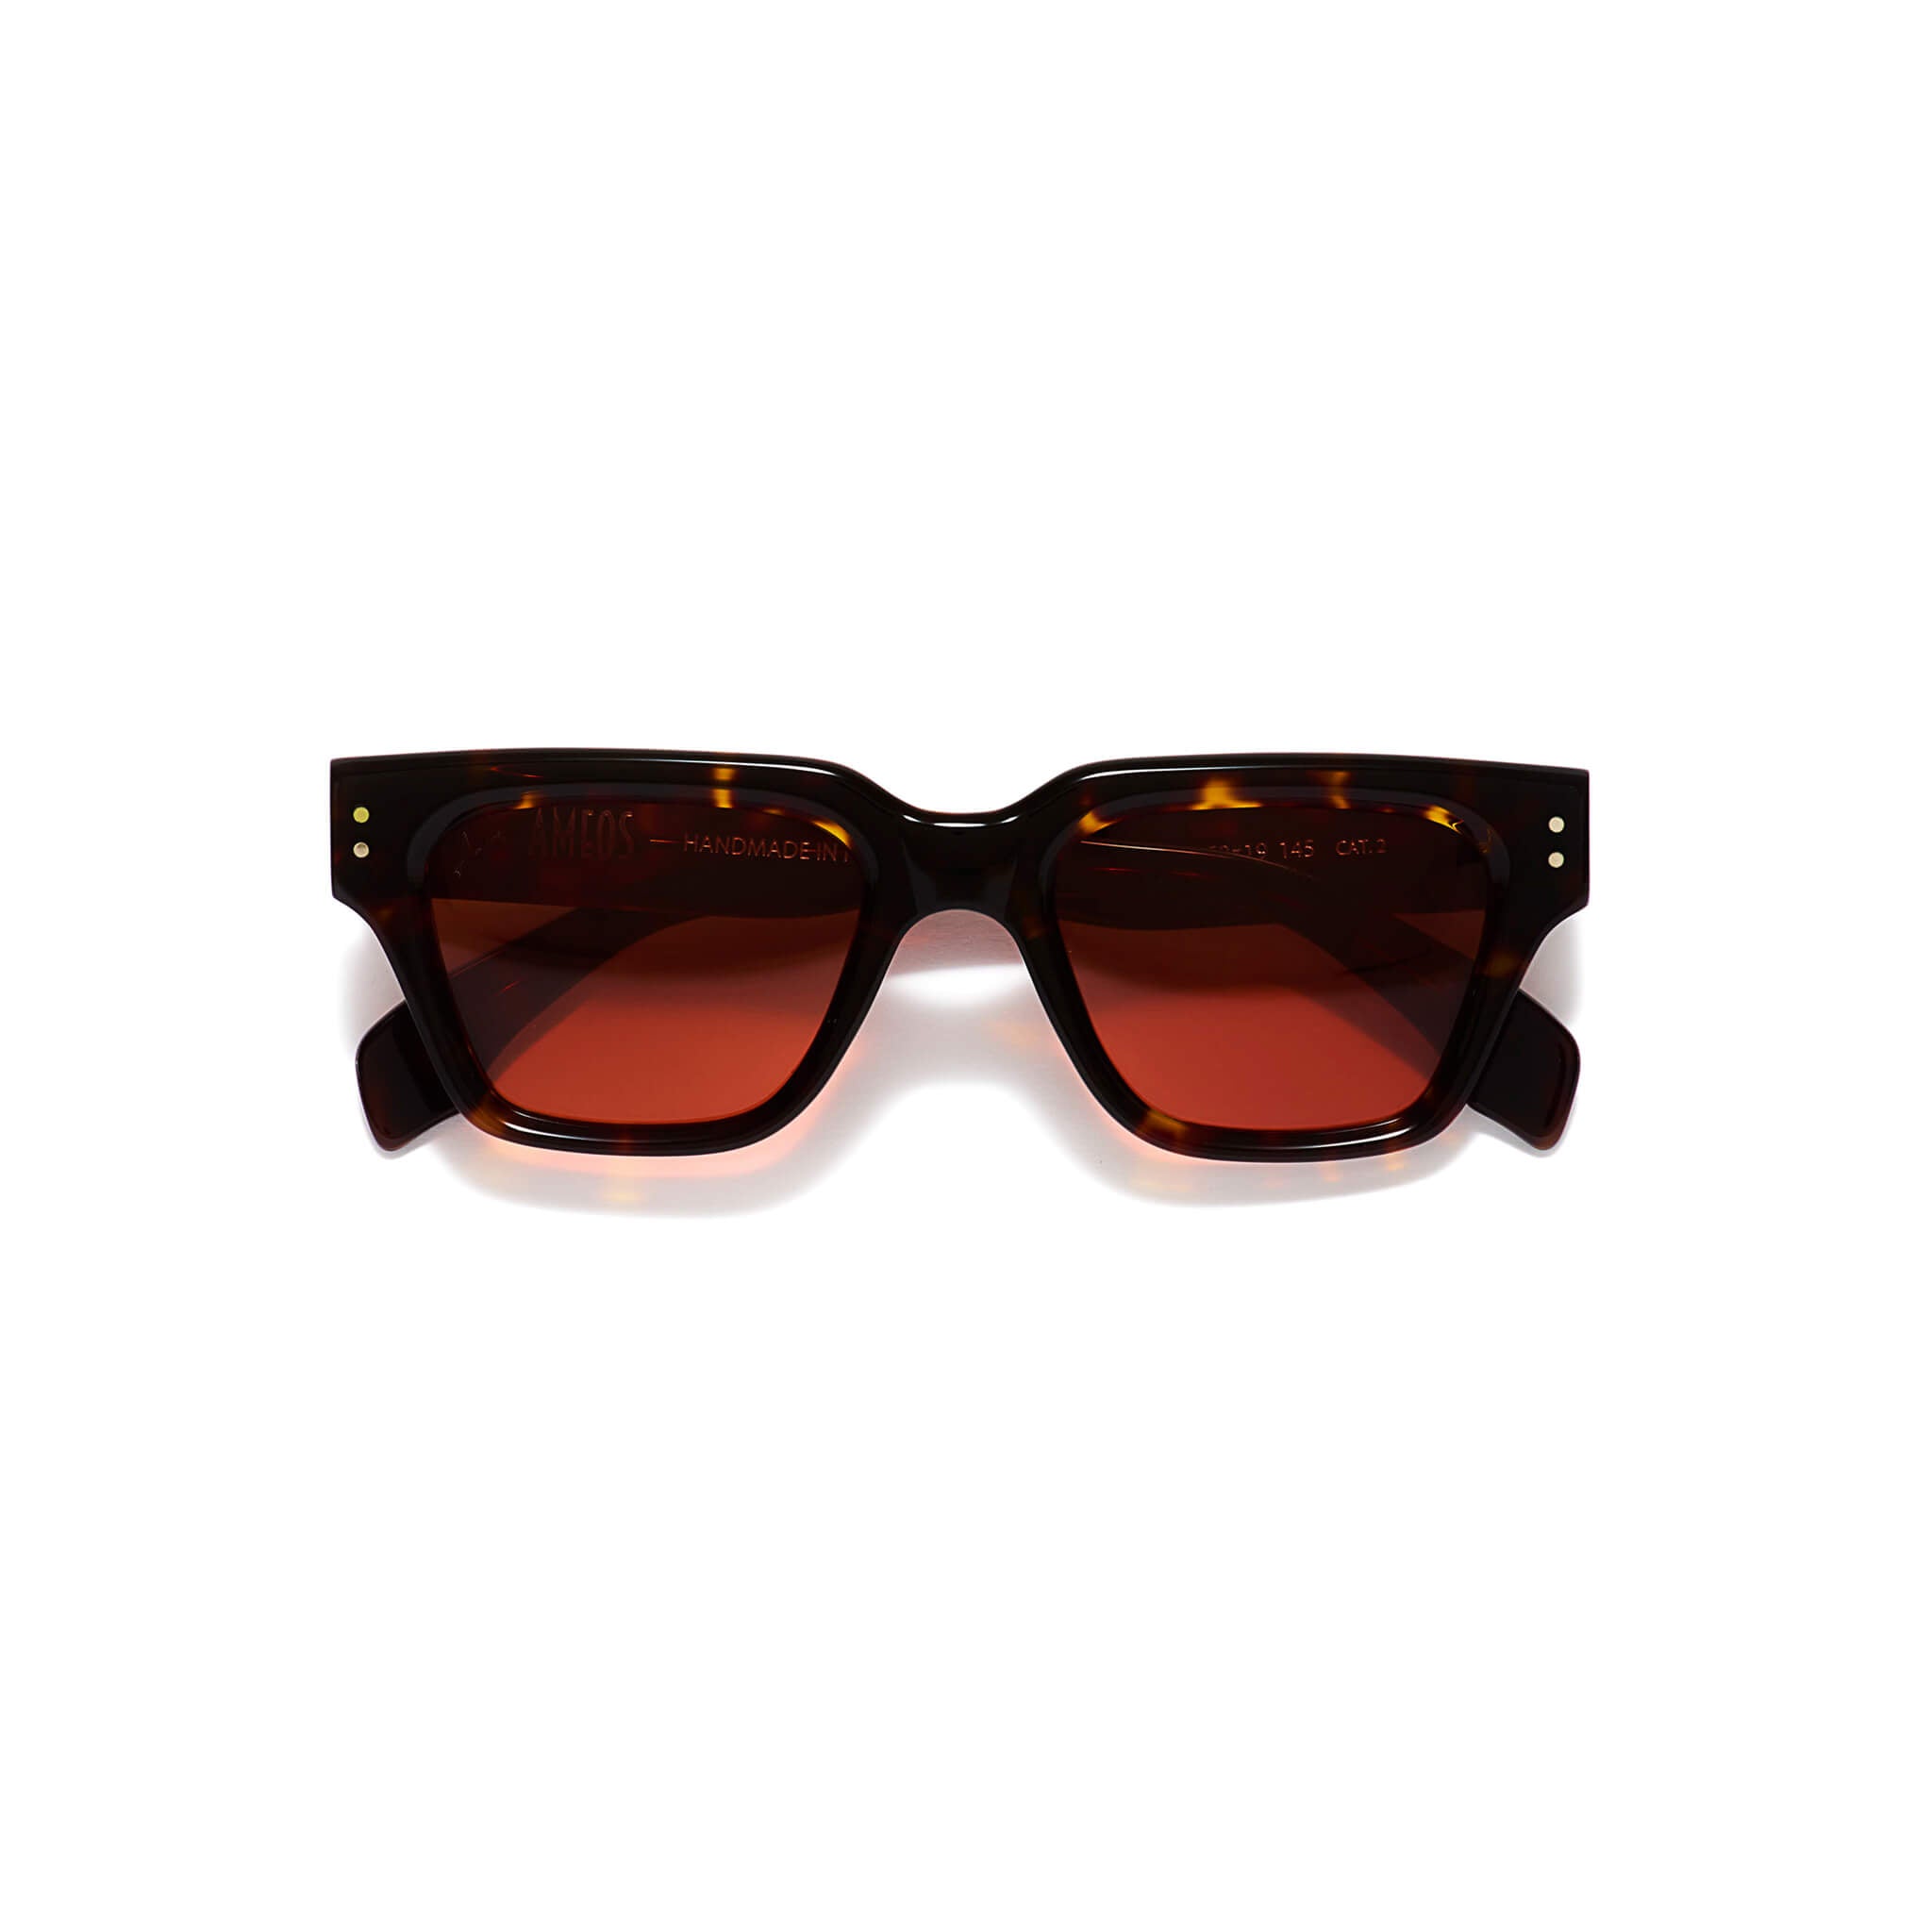 Tortoise frames sunglasses with red lenses 